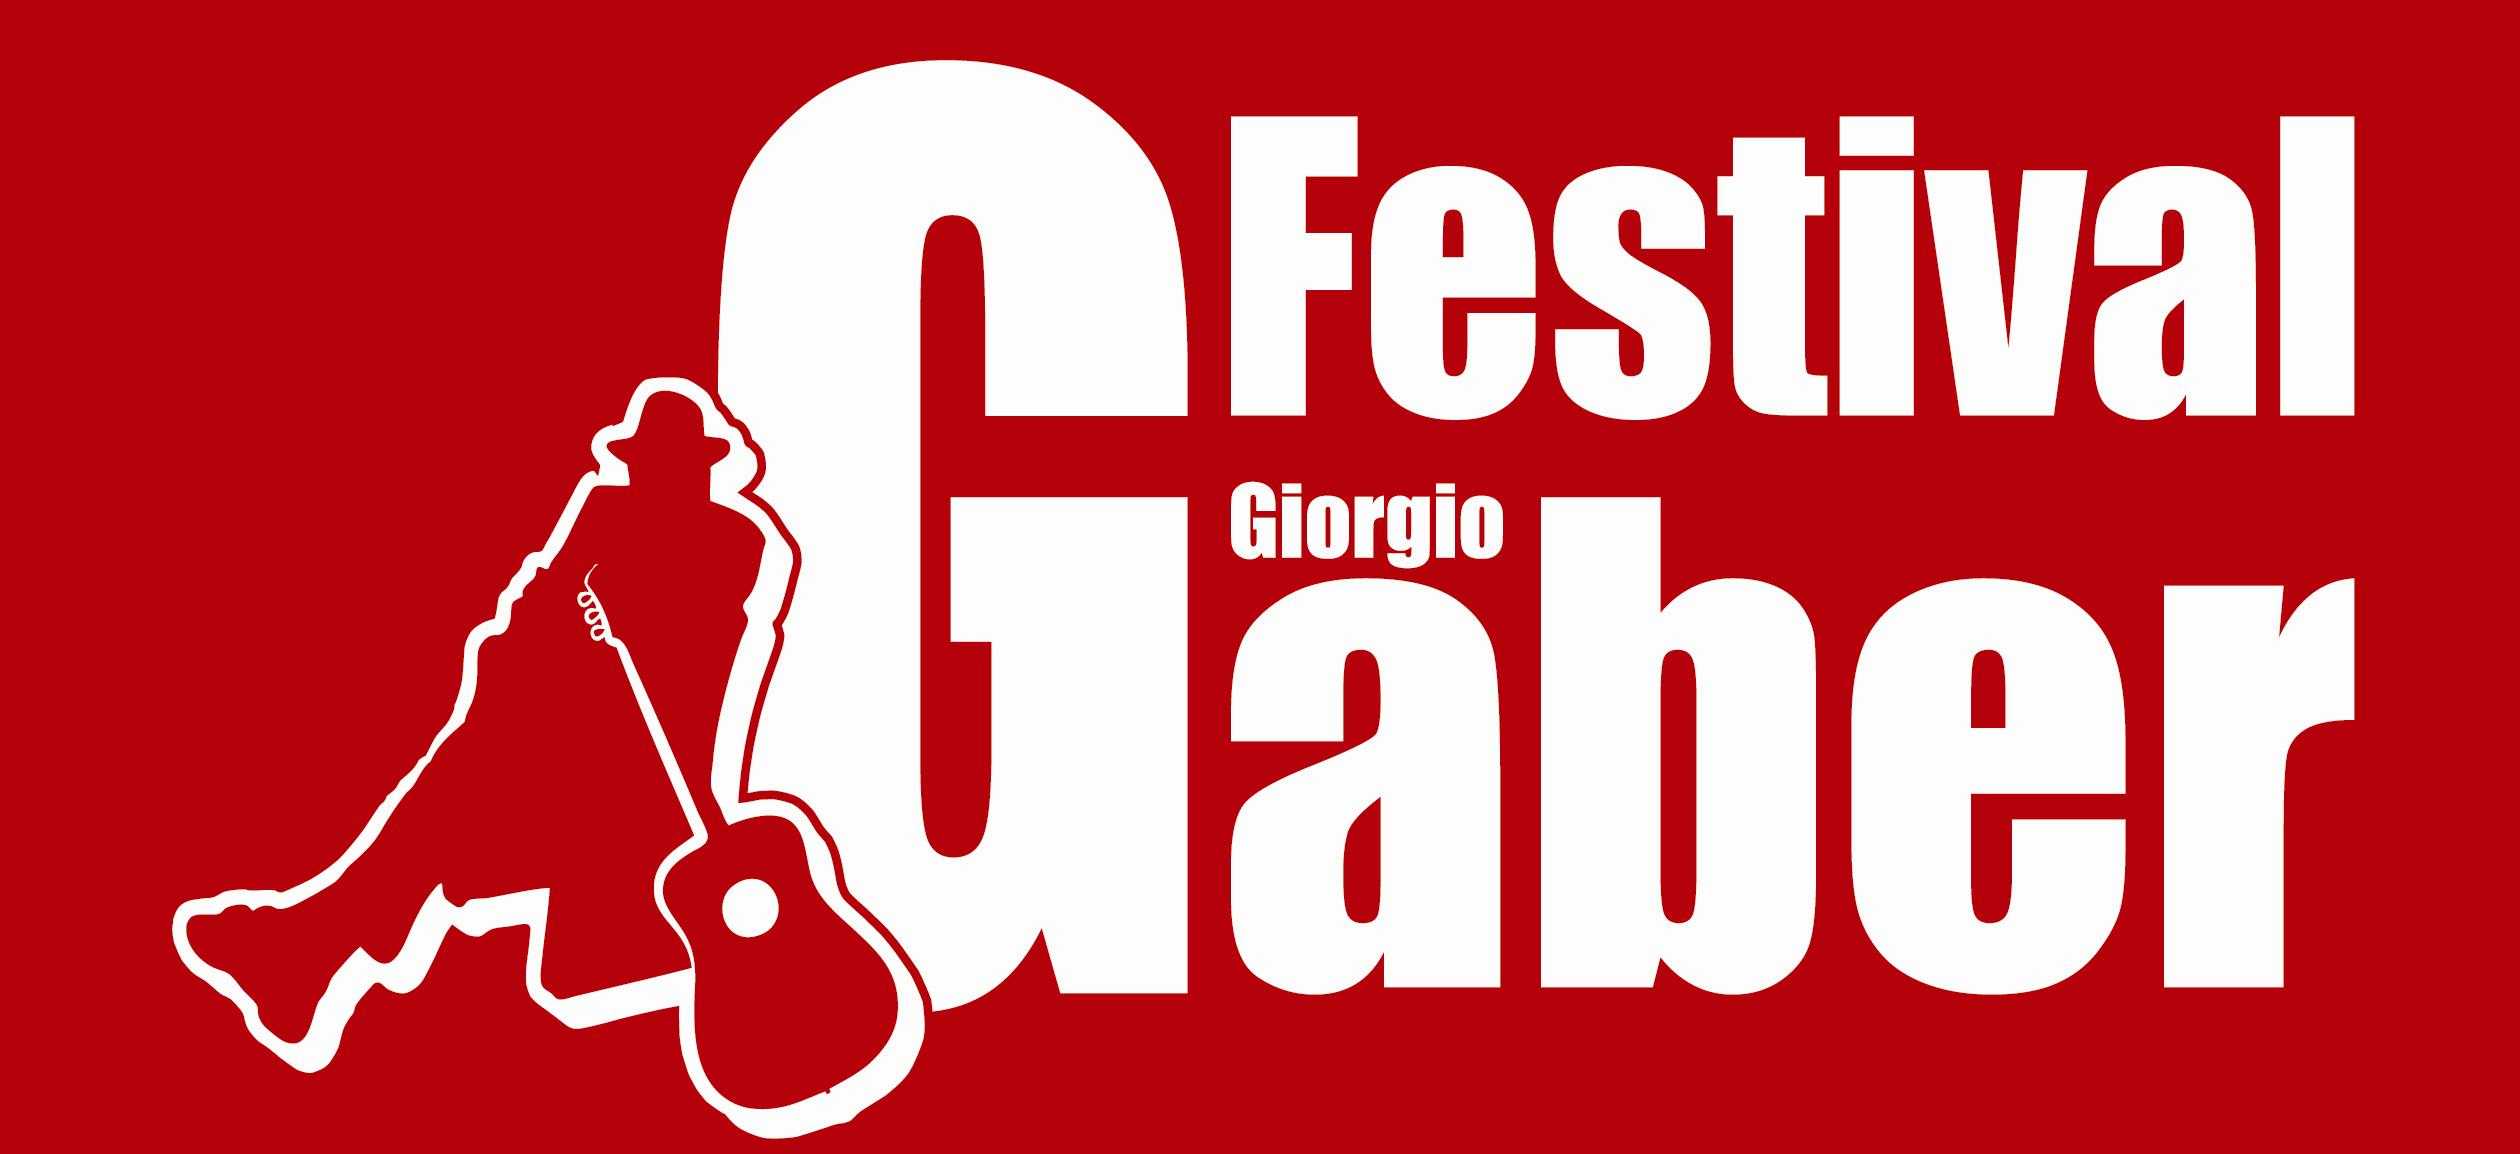 Festival Giorgio Gaber 2014 -  Triplicati i Comuni, un mese di manifestazioni in tutta la Toscana